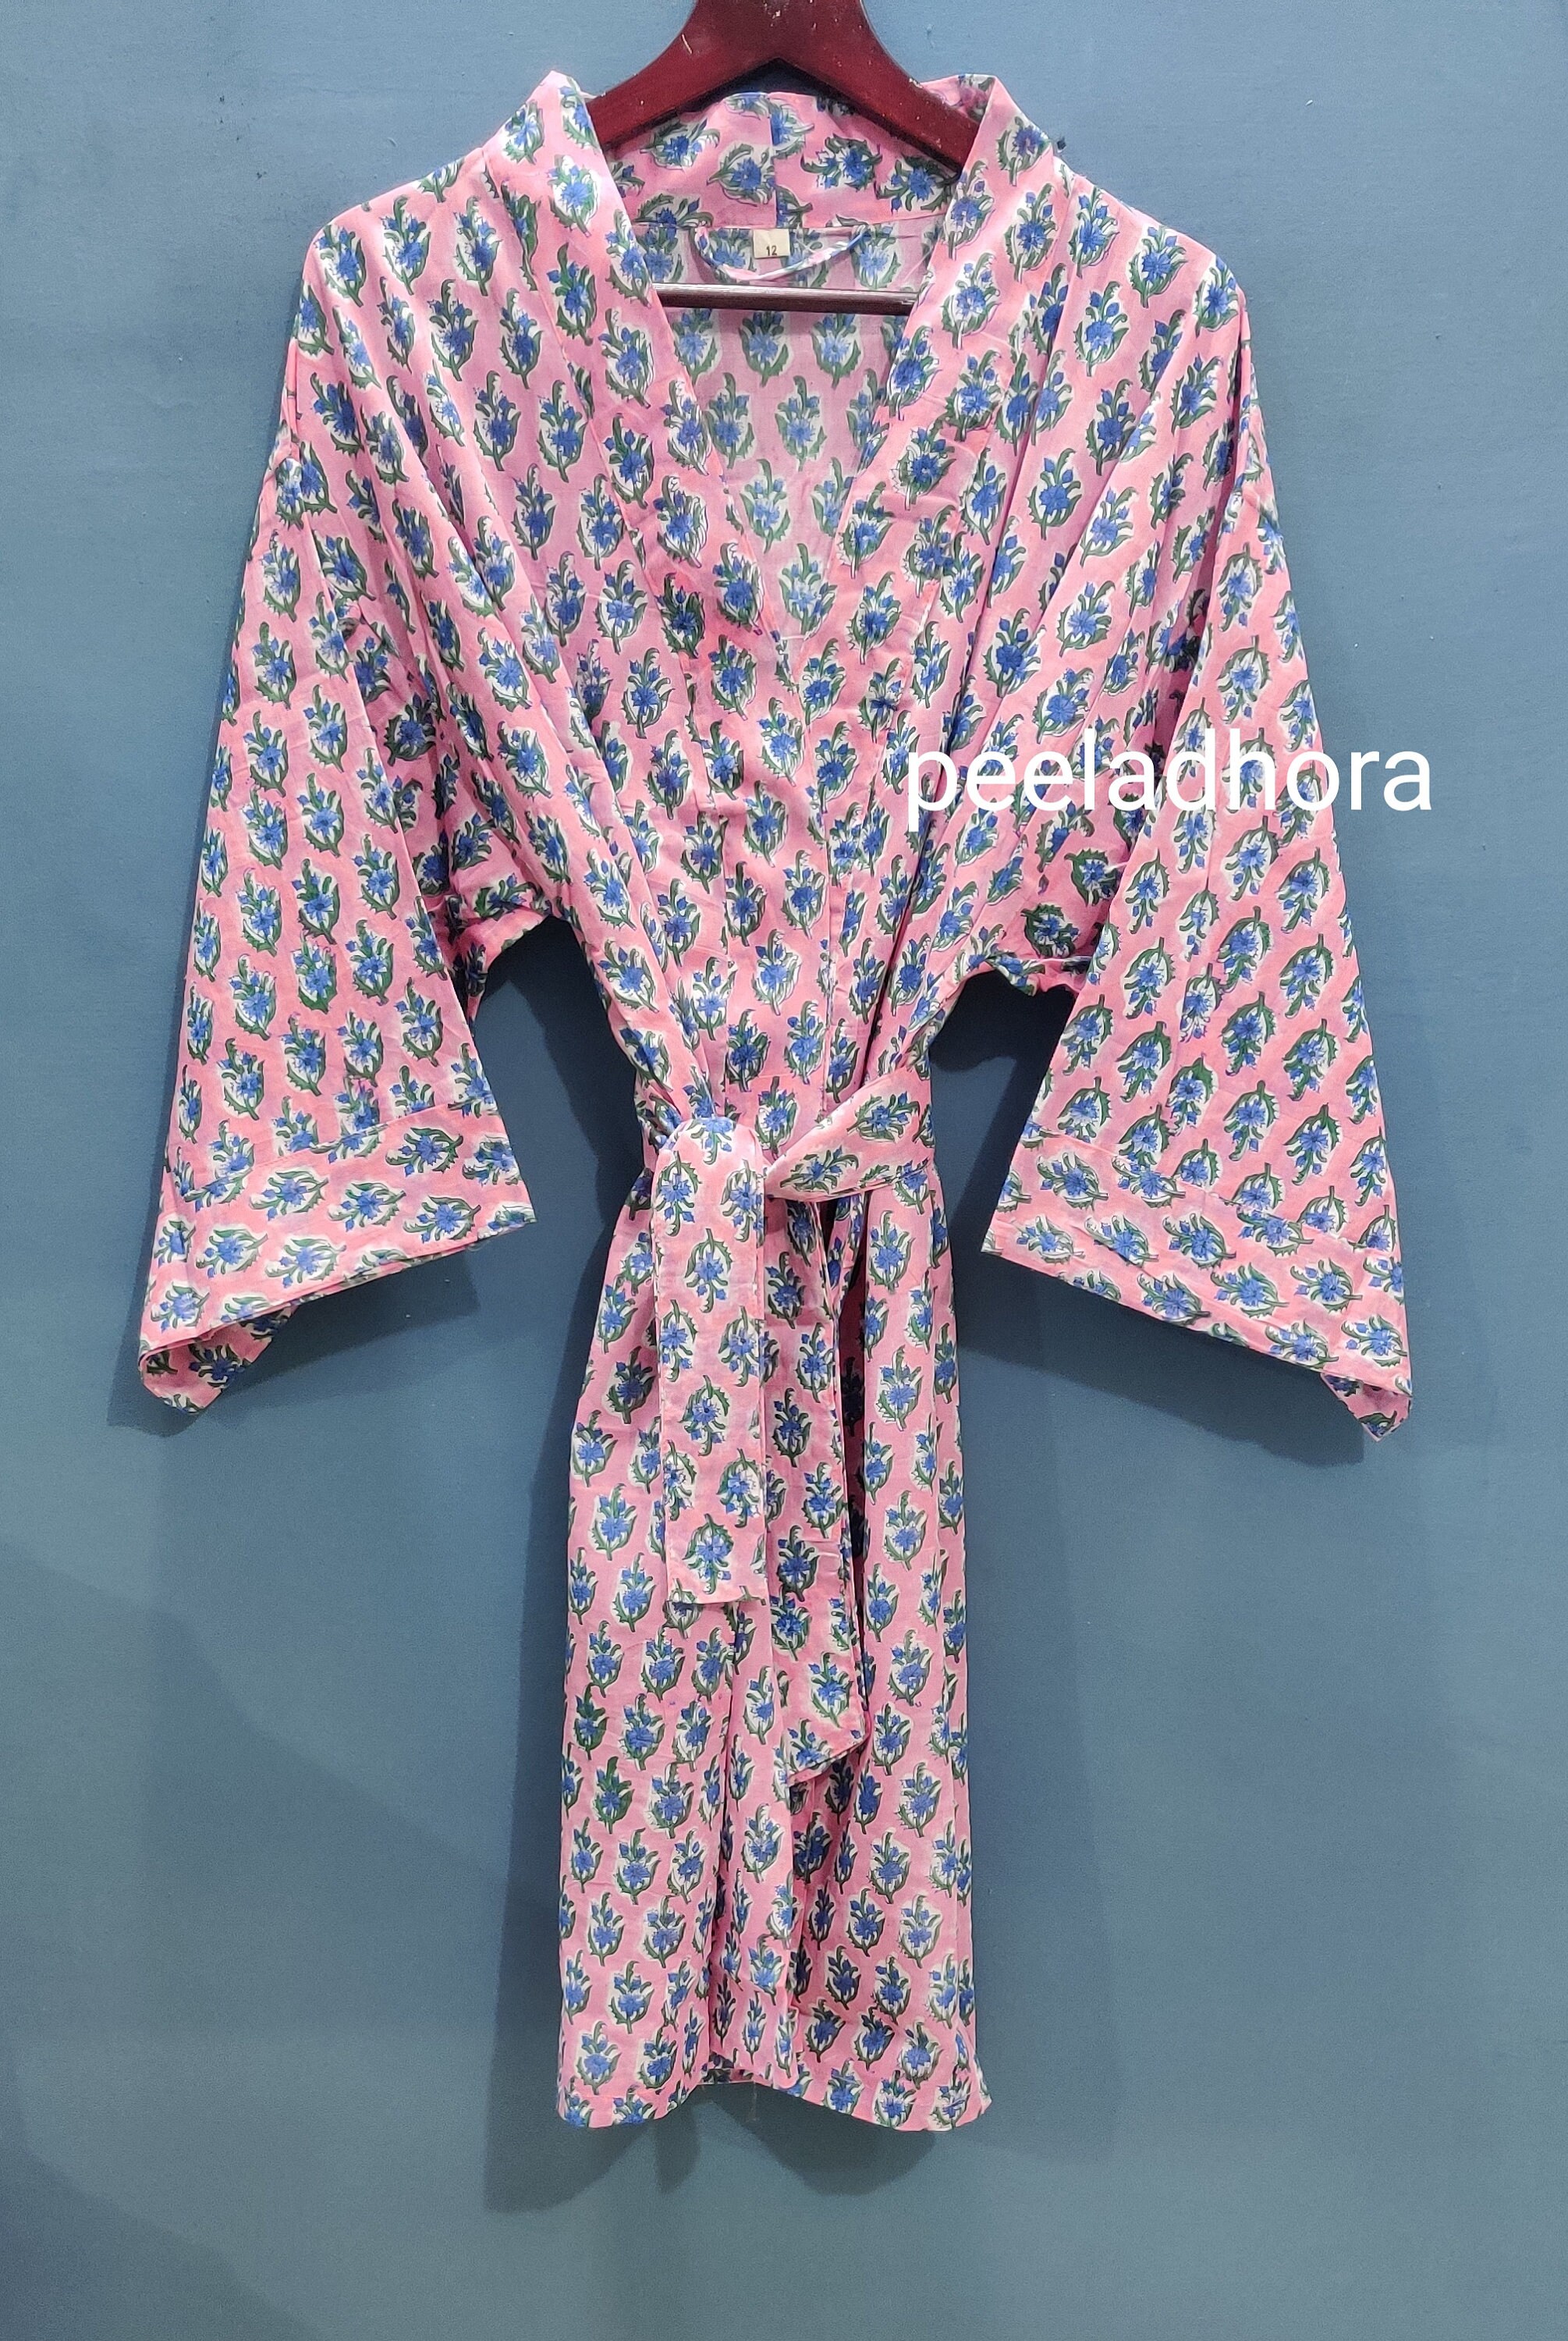 EXPRESS DELIVERY Cotton Kimono Robes Block Print Kimono - Etsy